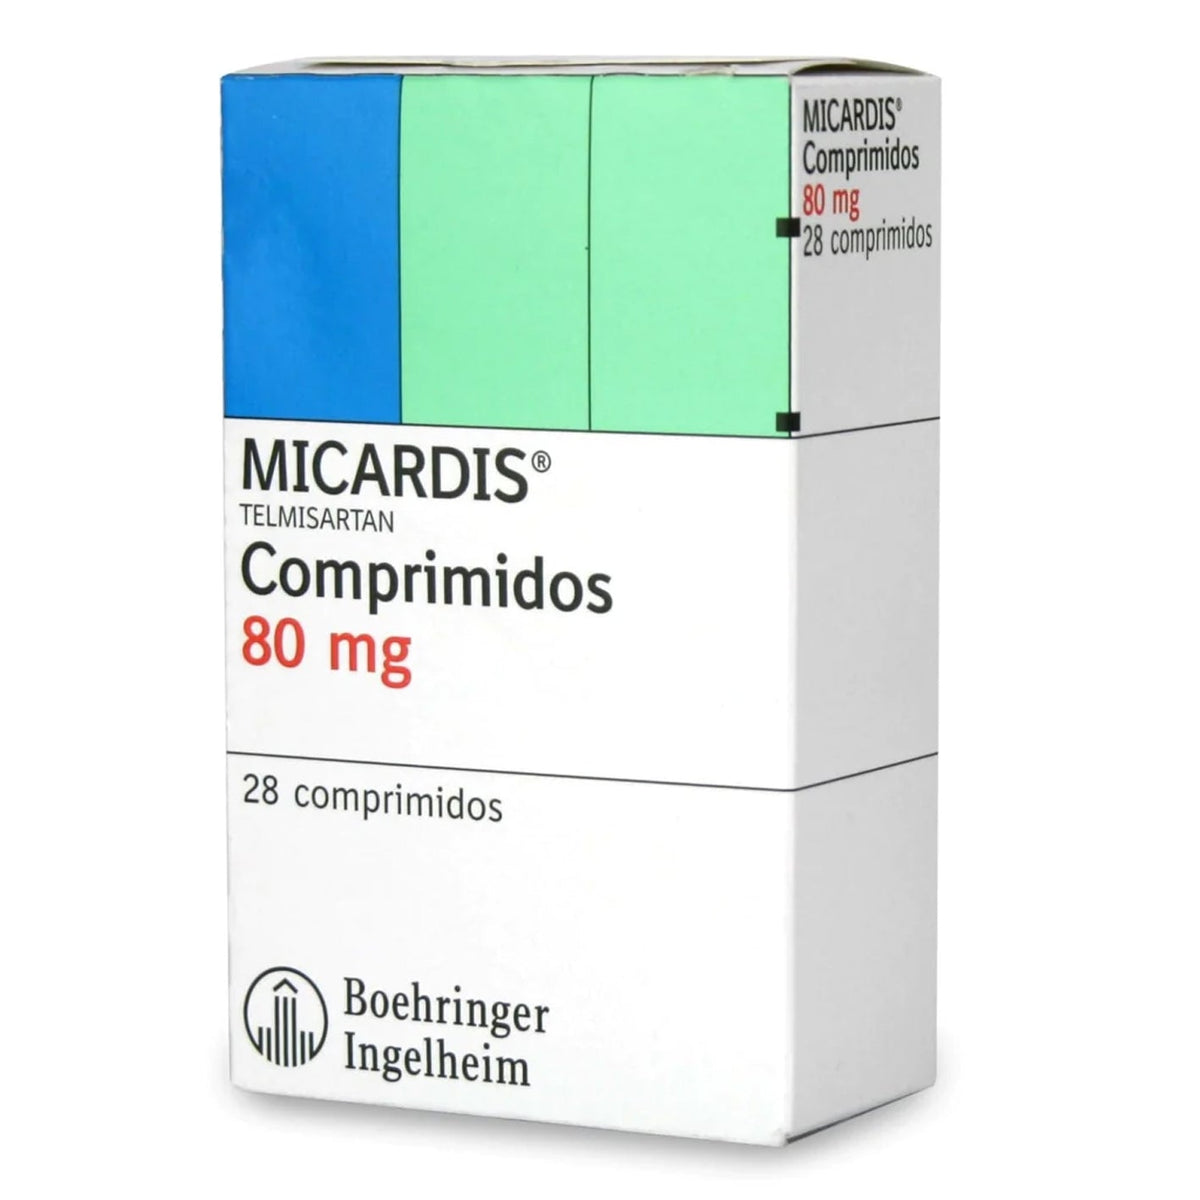 Micardis Comprimidos 80mg